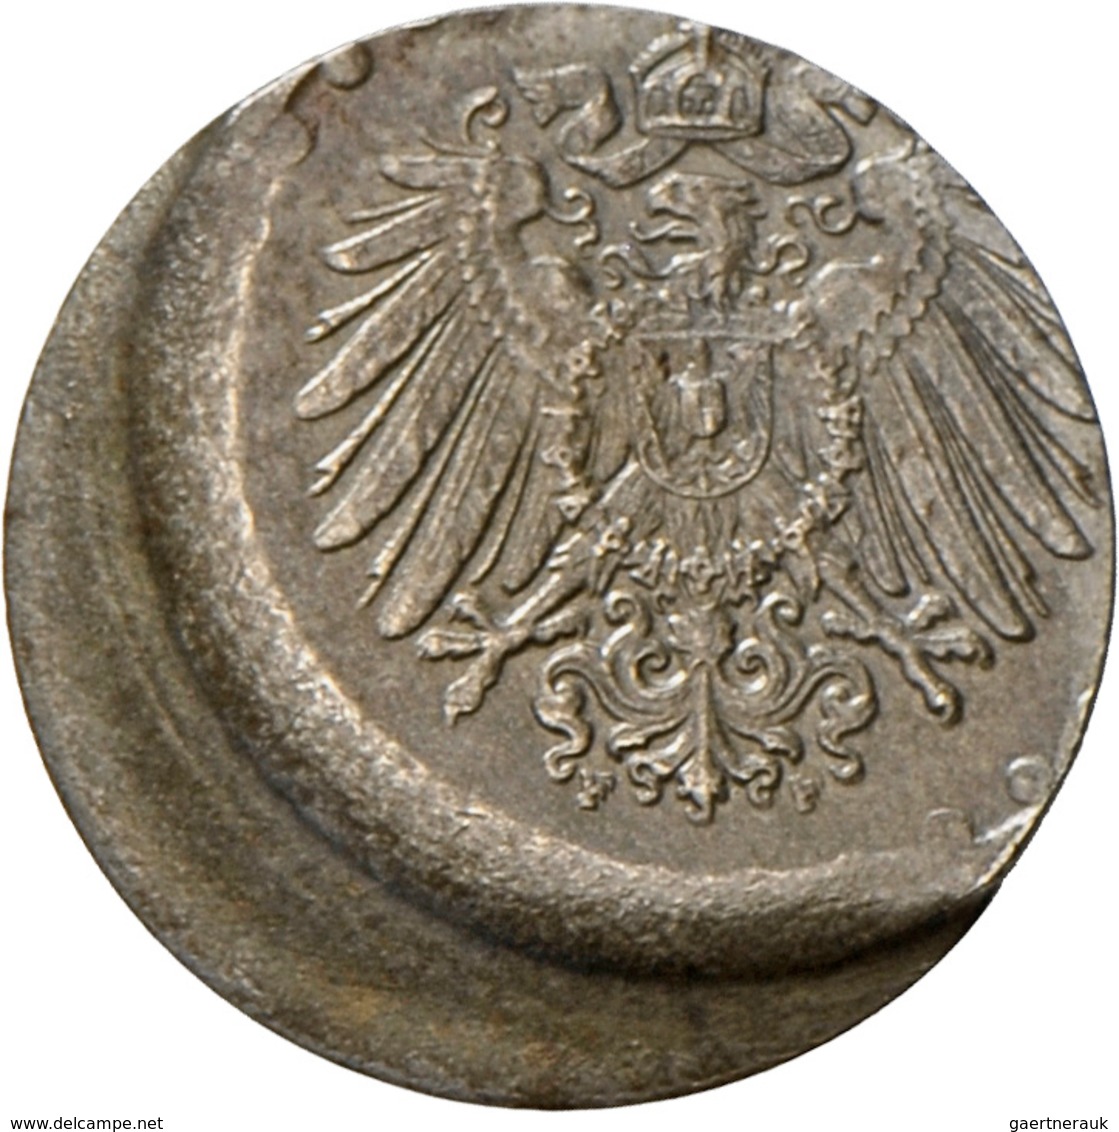 Umlaufmünzen 1 Pf. - 1 Mark: Lot 2 Münzen: 10 Pfennig 1918 - Fehlprägung Dezentriert Ca. 20%; 10 Pfe - Taler Et Doppeltaler